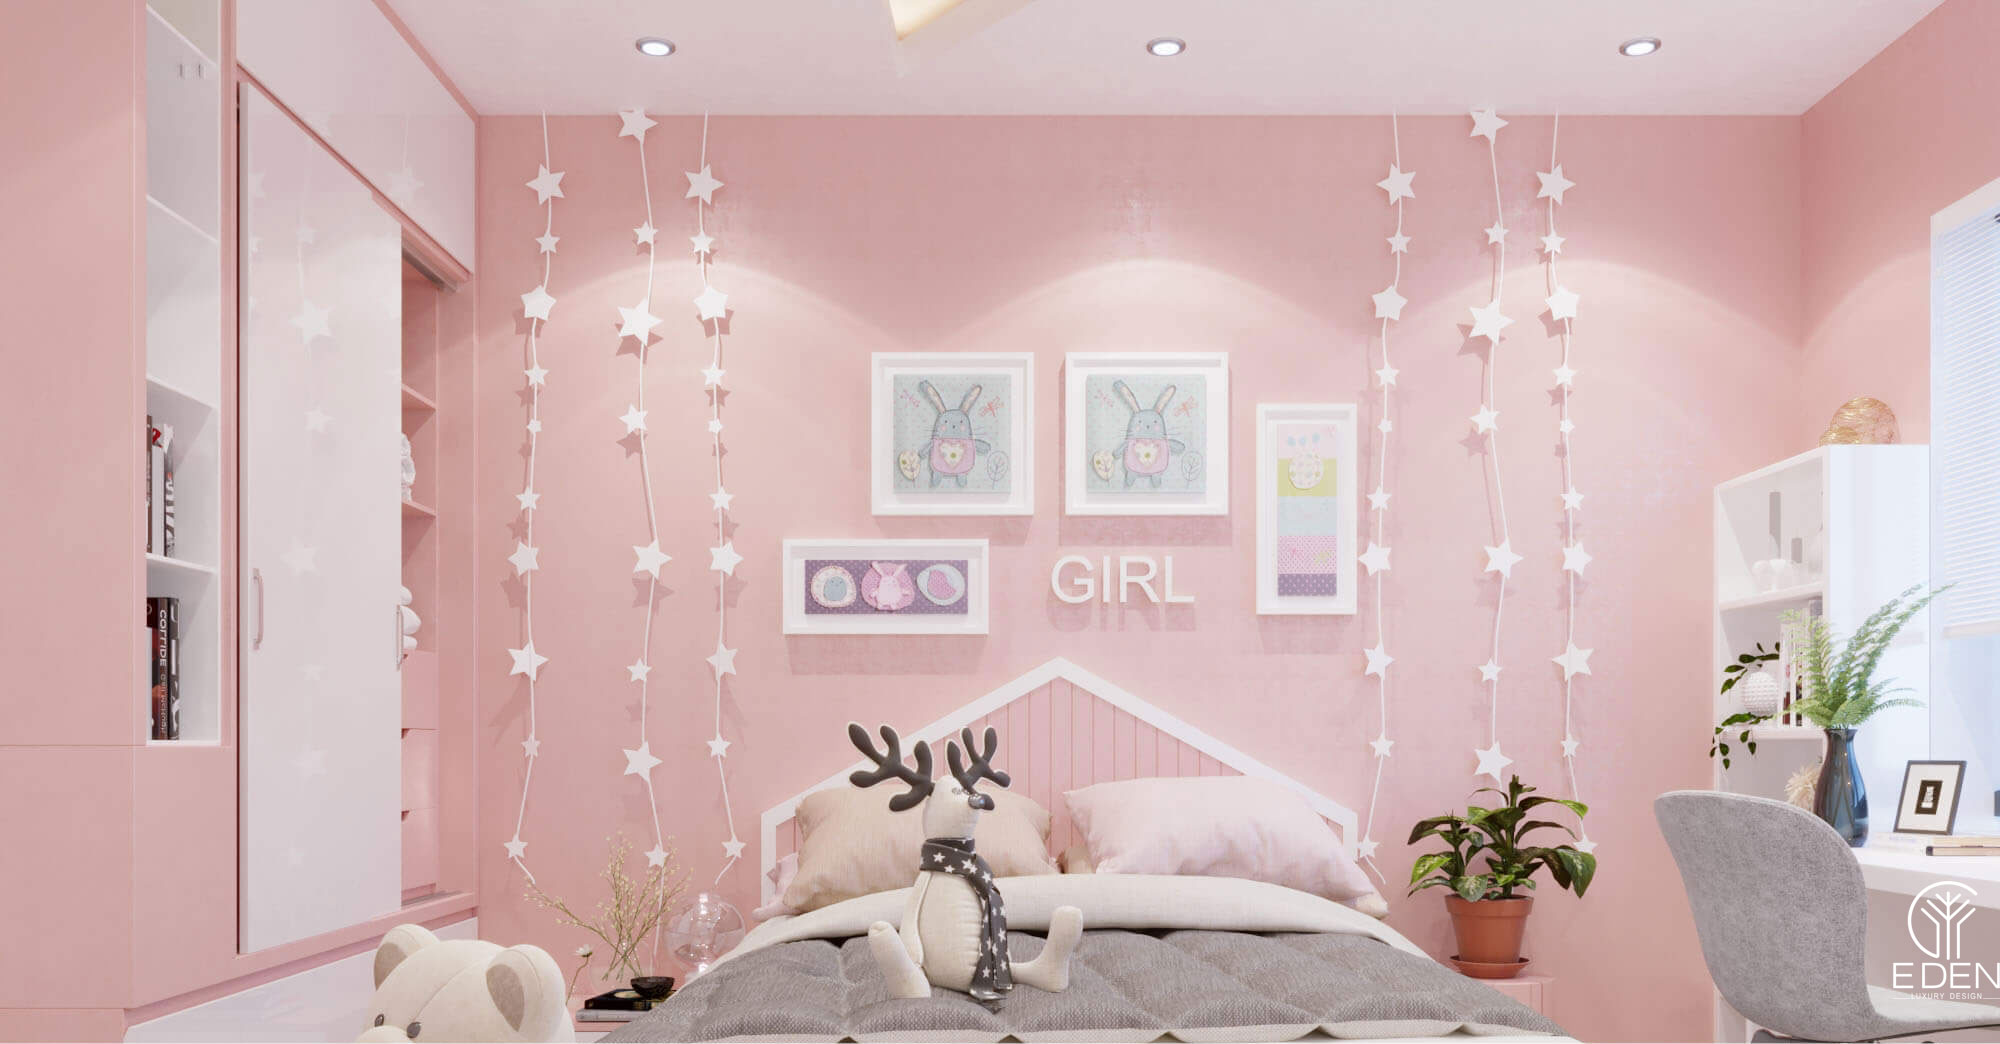 Phòng ngủ màu hồng xanh cho các gái hình 5 